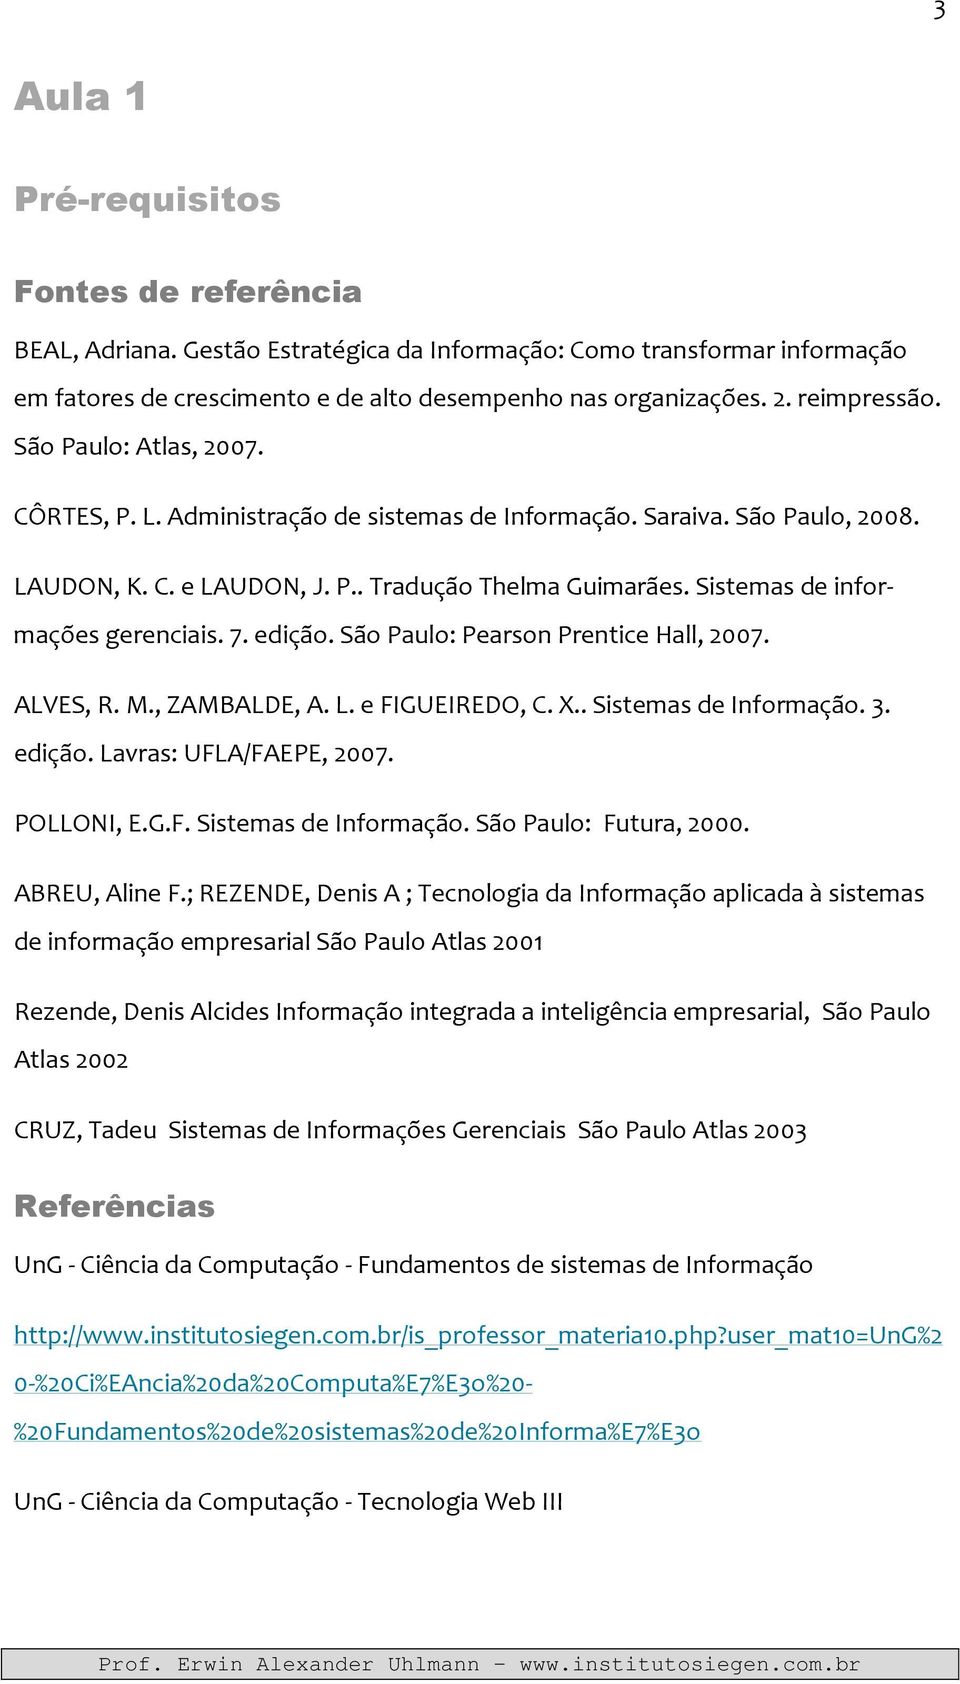 Sistemas de informações gerenciais. 7. edição. São Paulo: Pearson Prentice Hall, 2007. ALVES, R. M., ZAMBALDE, A. L. e FIGUEIREDO, C. X.. Sistemas de Informação. 3. edição. Lavras: UFLA/FAEPE, 2007.